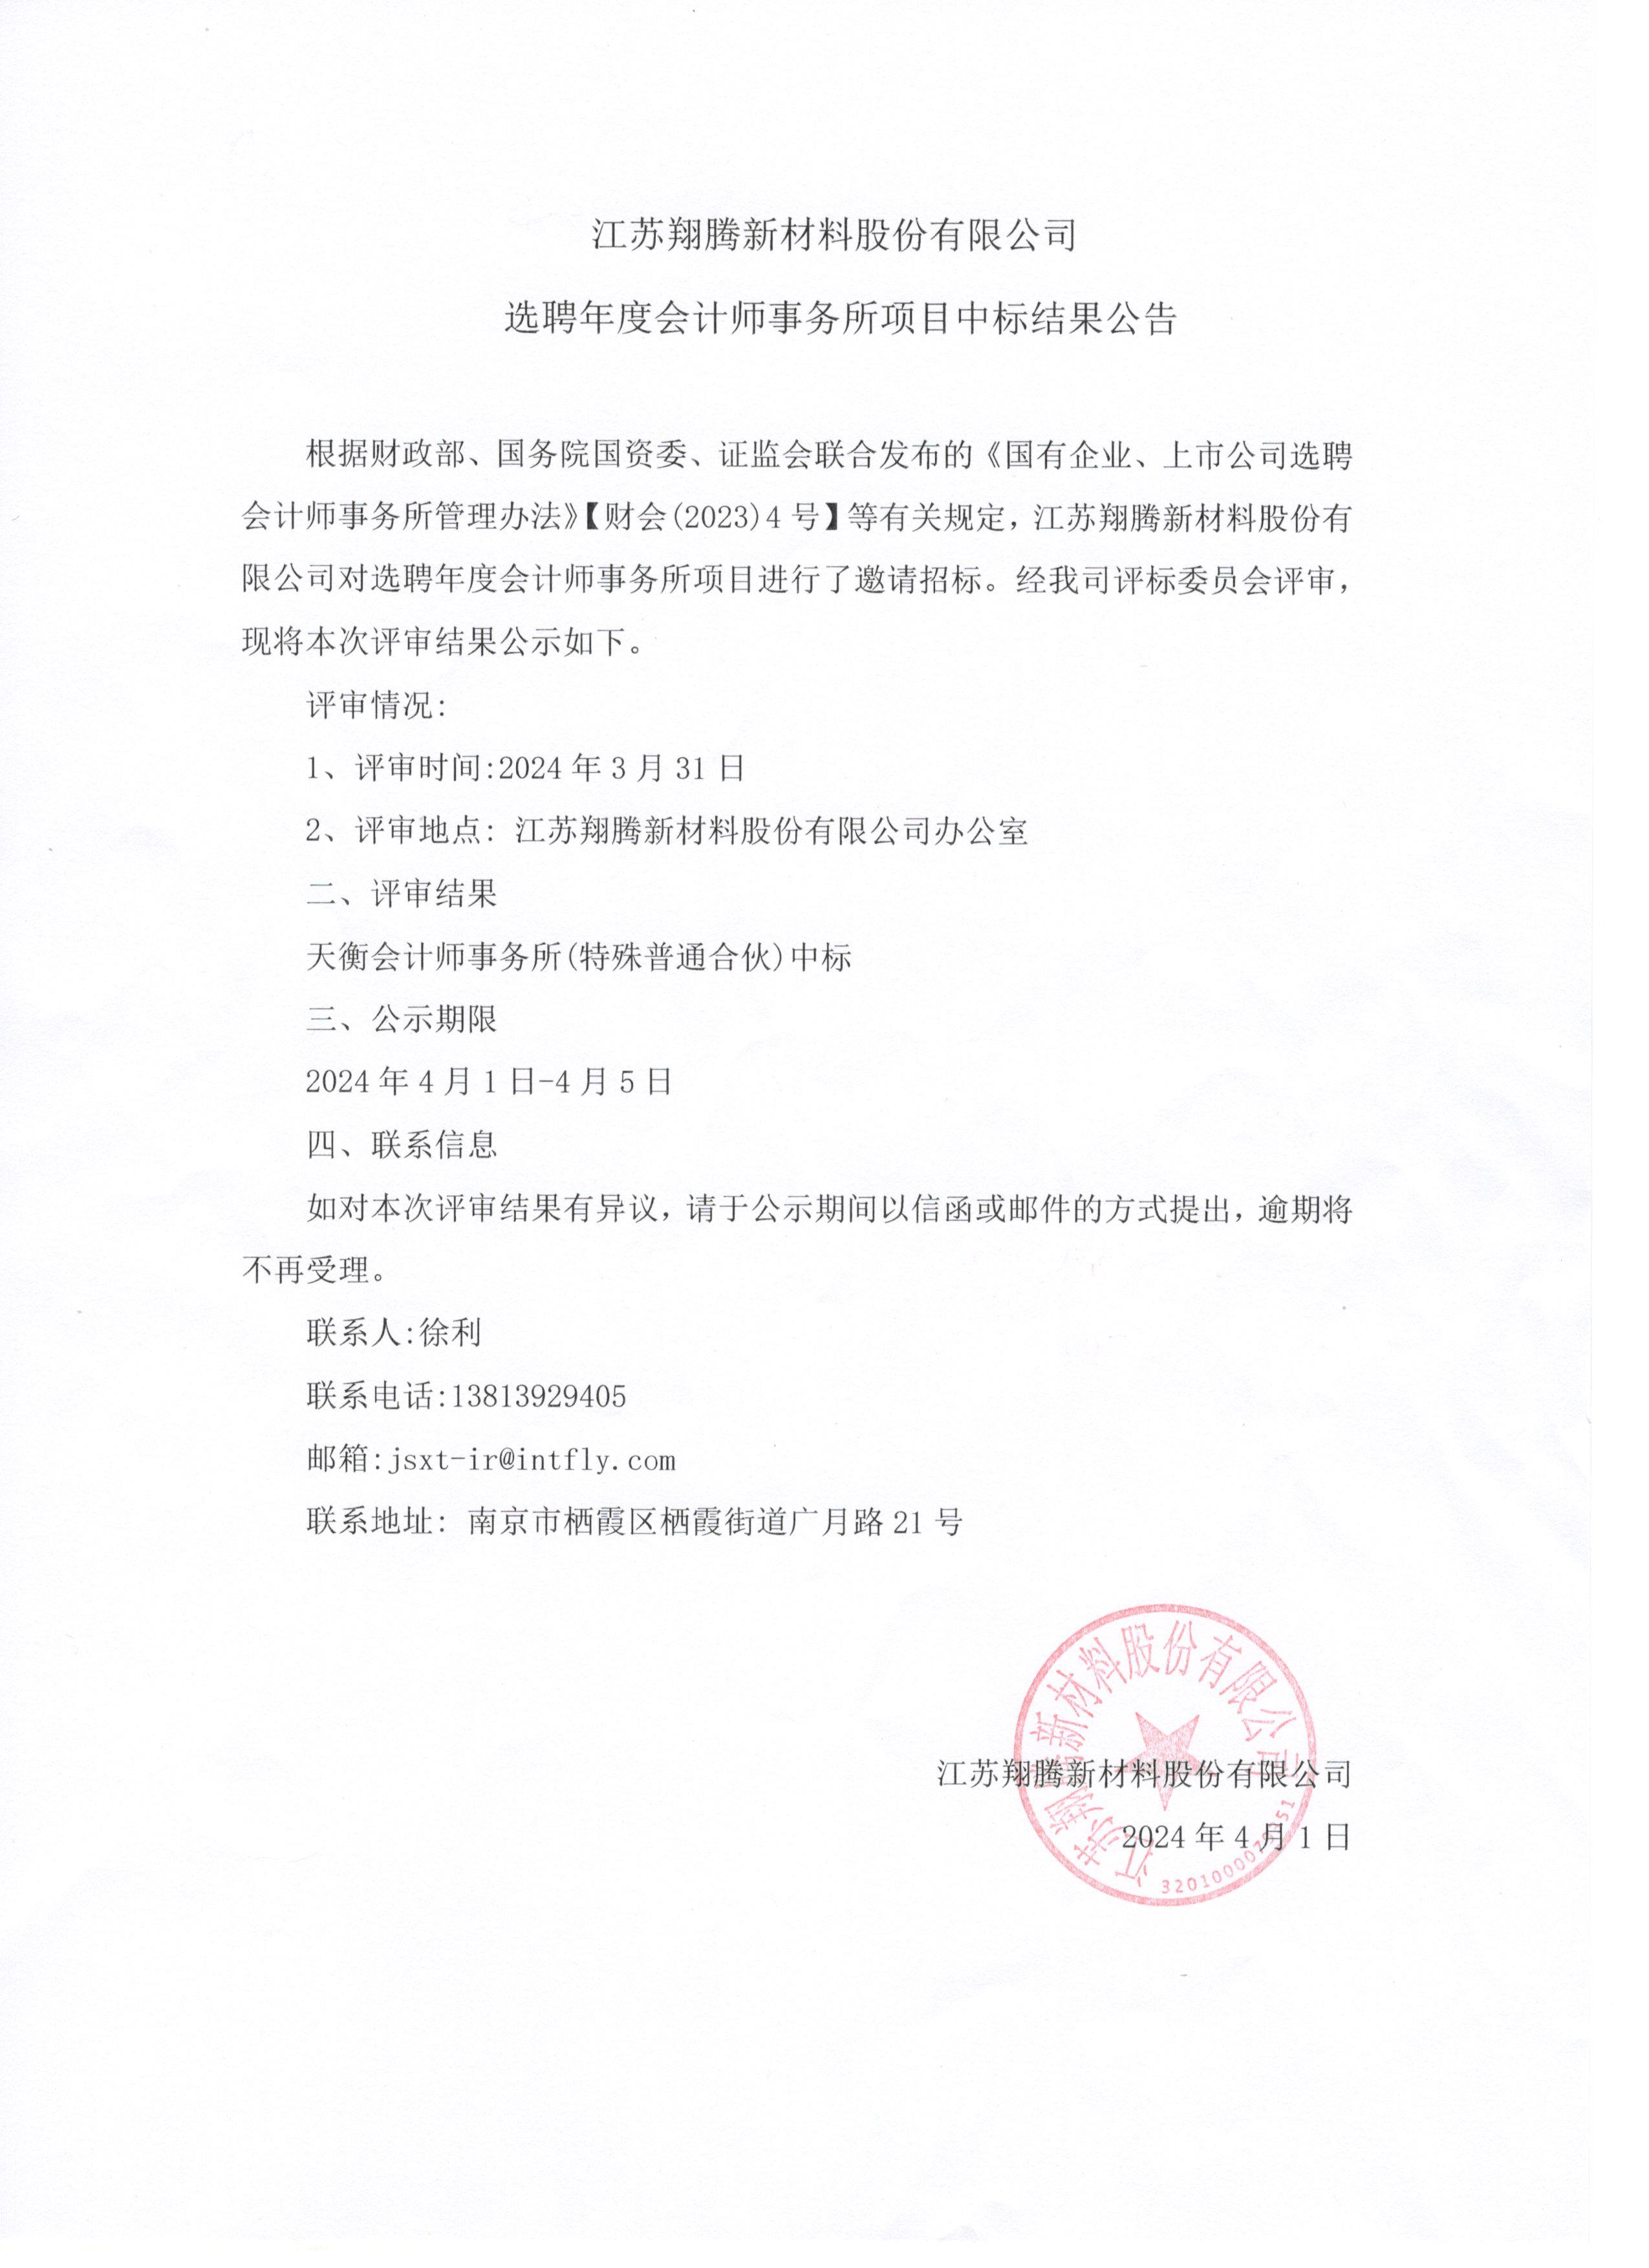 江苏翔腾新材料股份有限公司 选聘年度会计师事务所项目中标结果公告